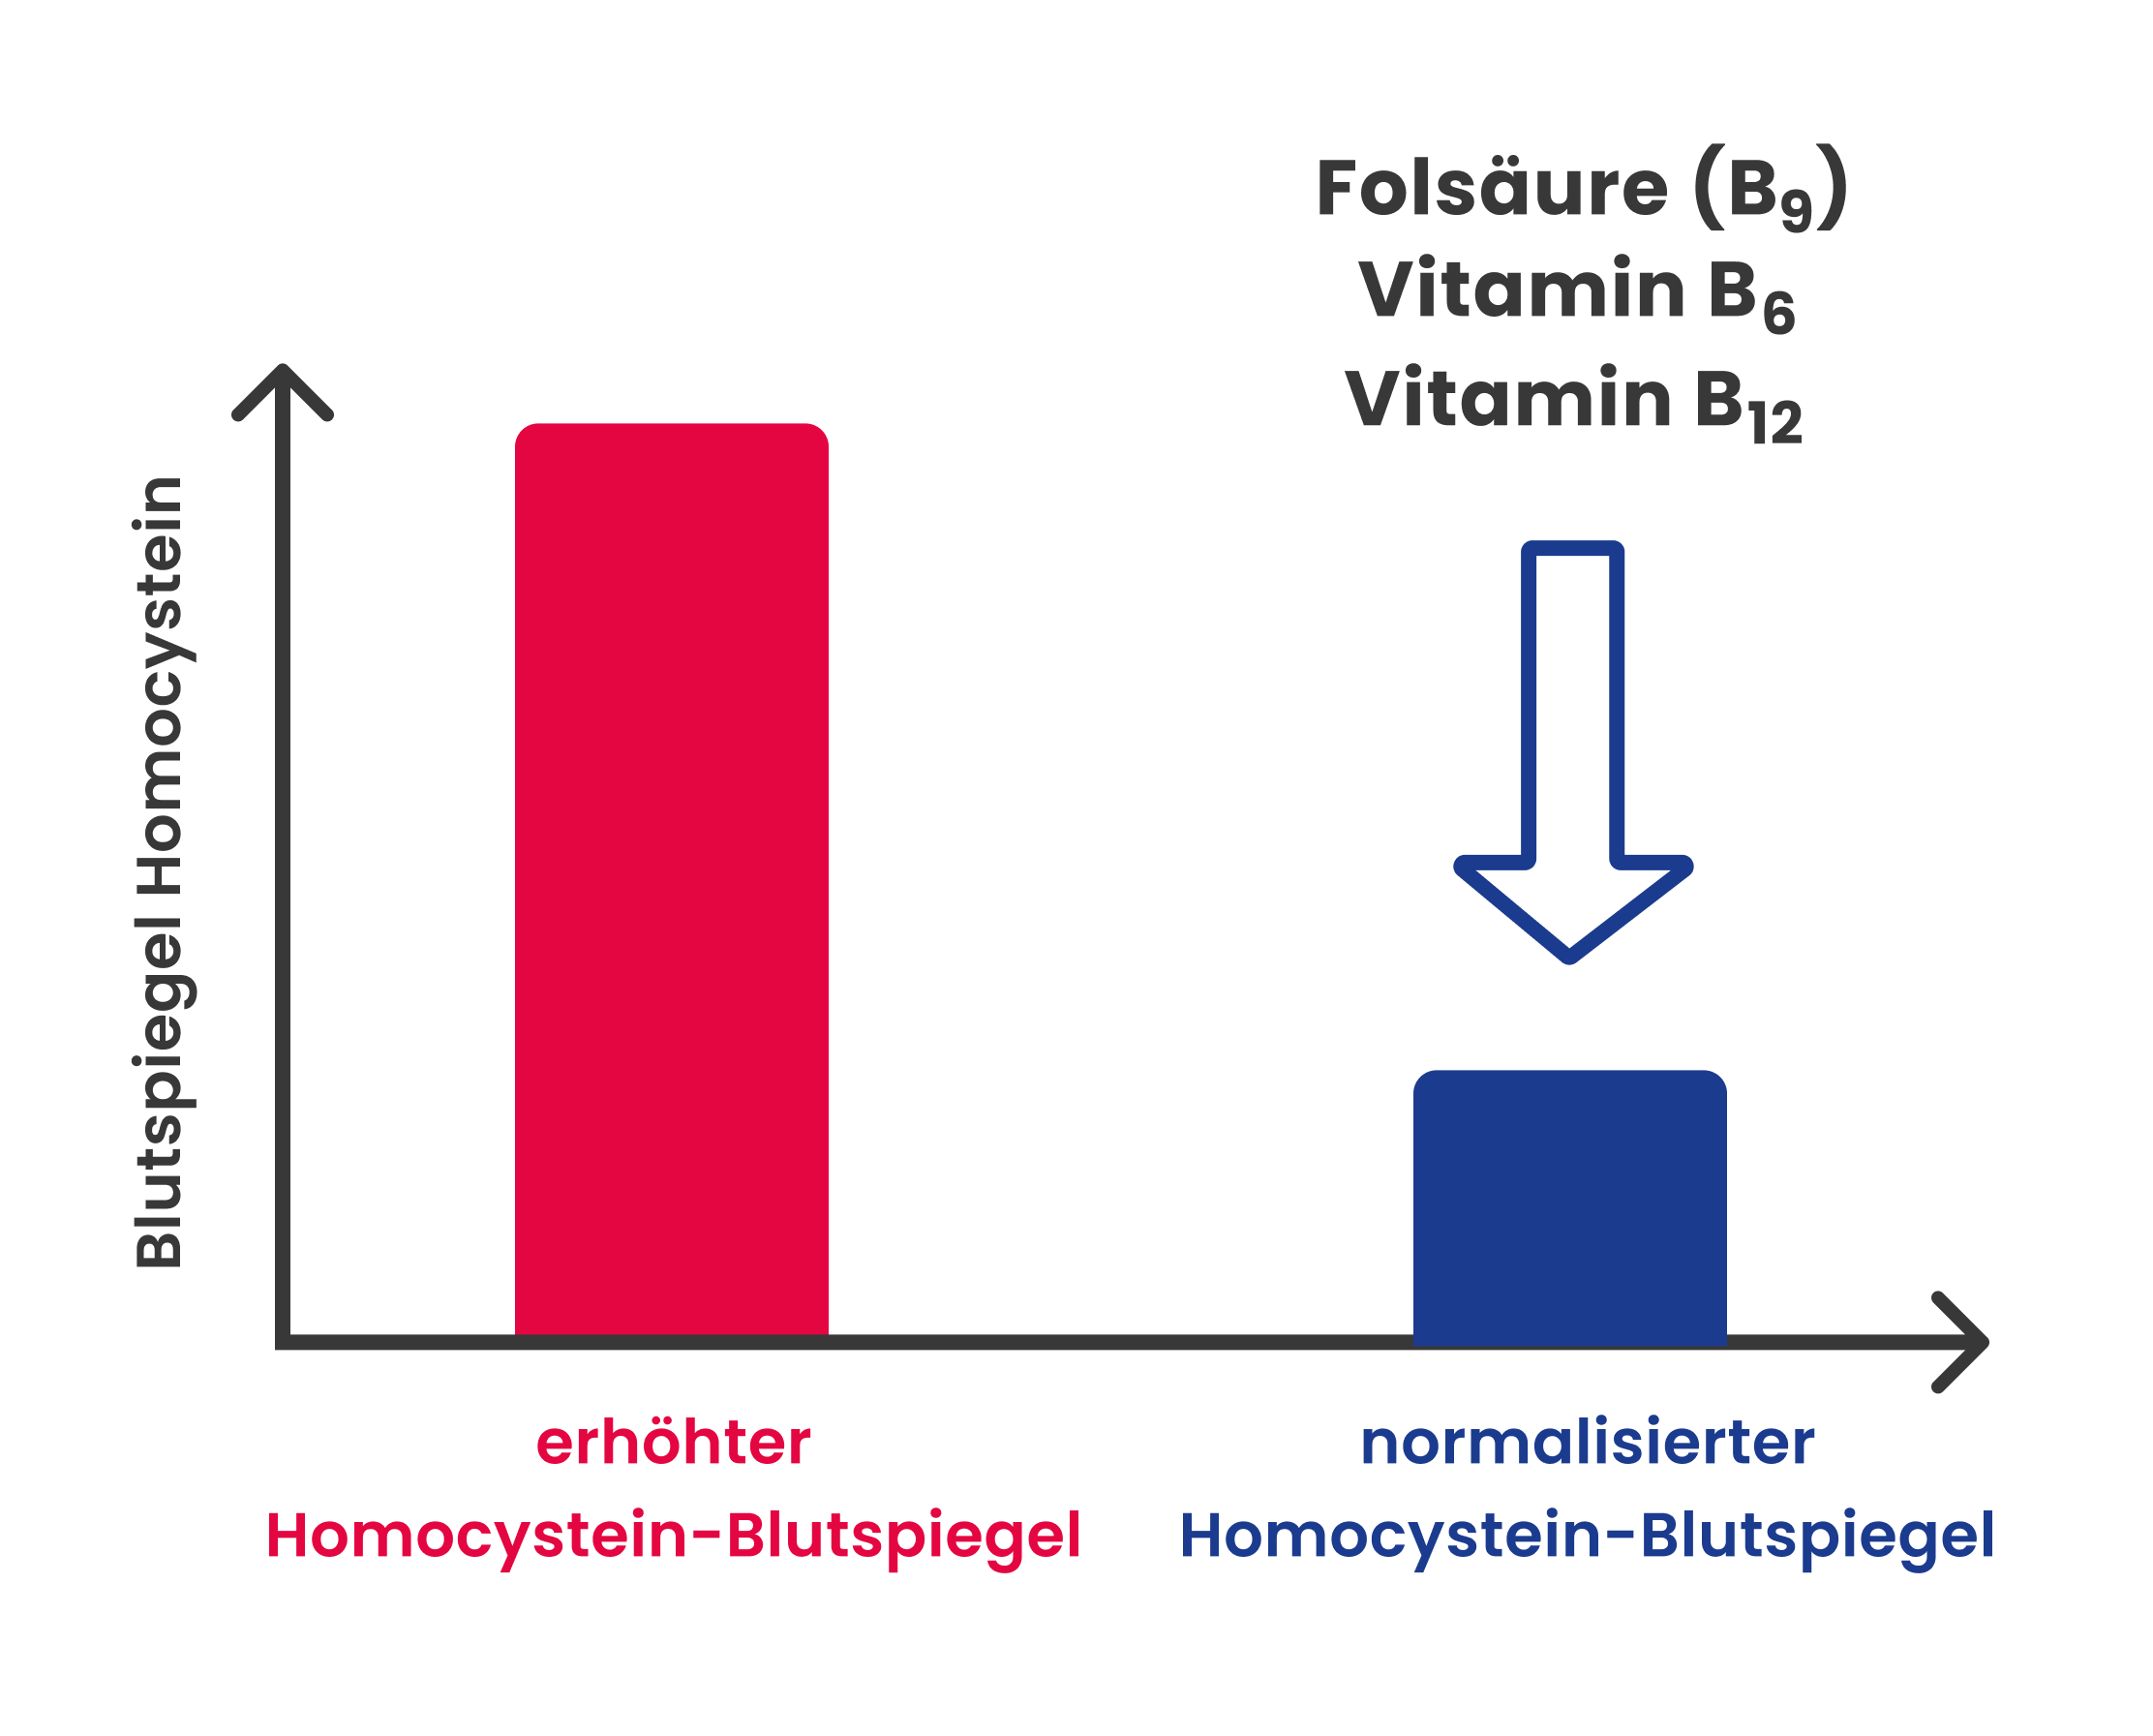 B-Vitamine regulieren Homocystein-Blutspiegel im Alter